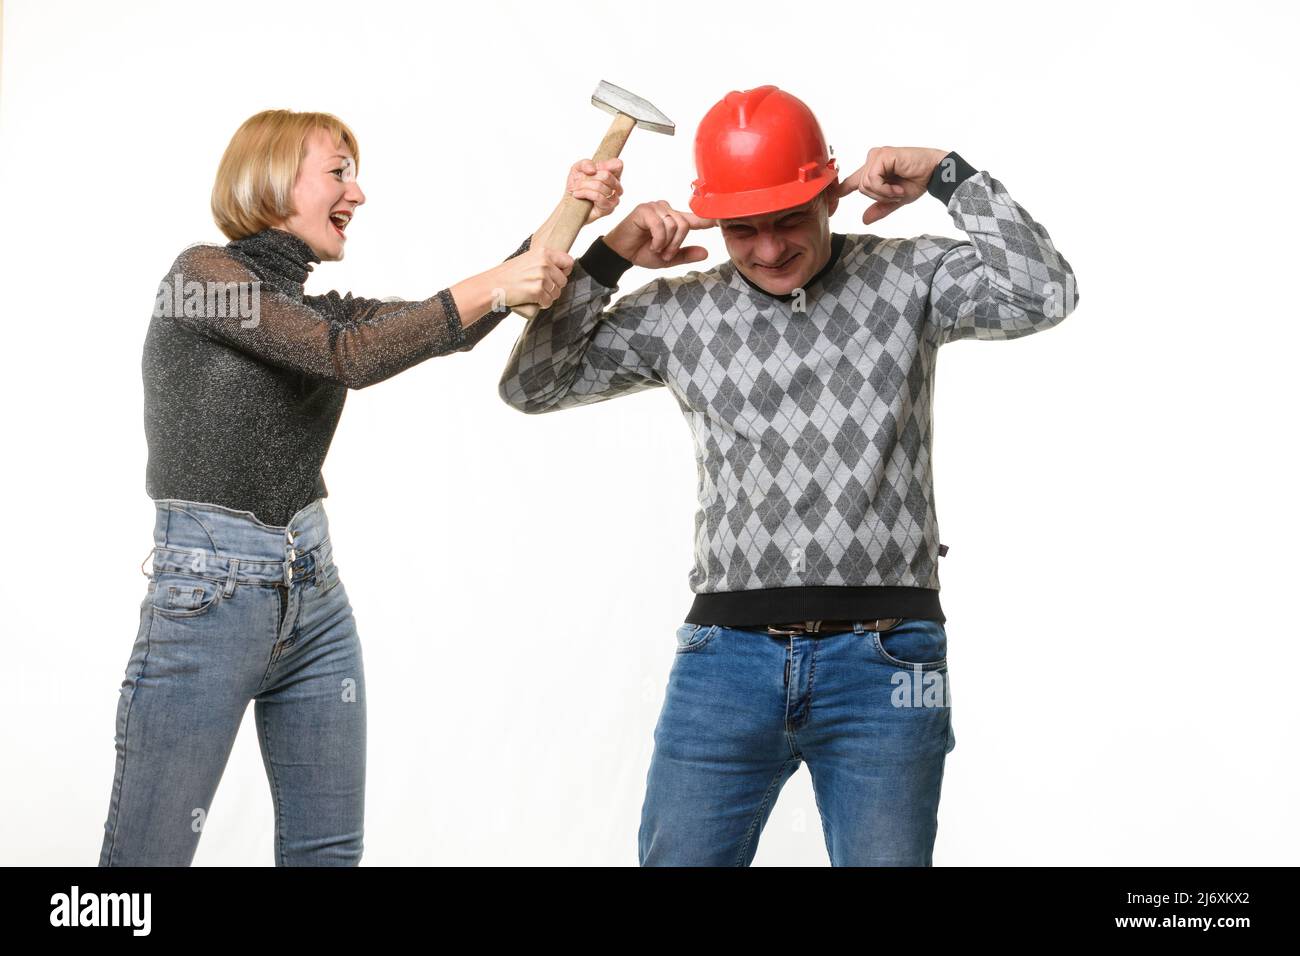 La esposa grita y golpea a su marido en la cabeza con un martillo, el marido lleva un casco y se cubrió las orejas con los dedos Foto de stock